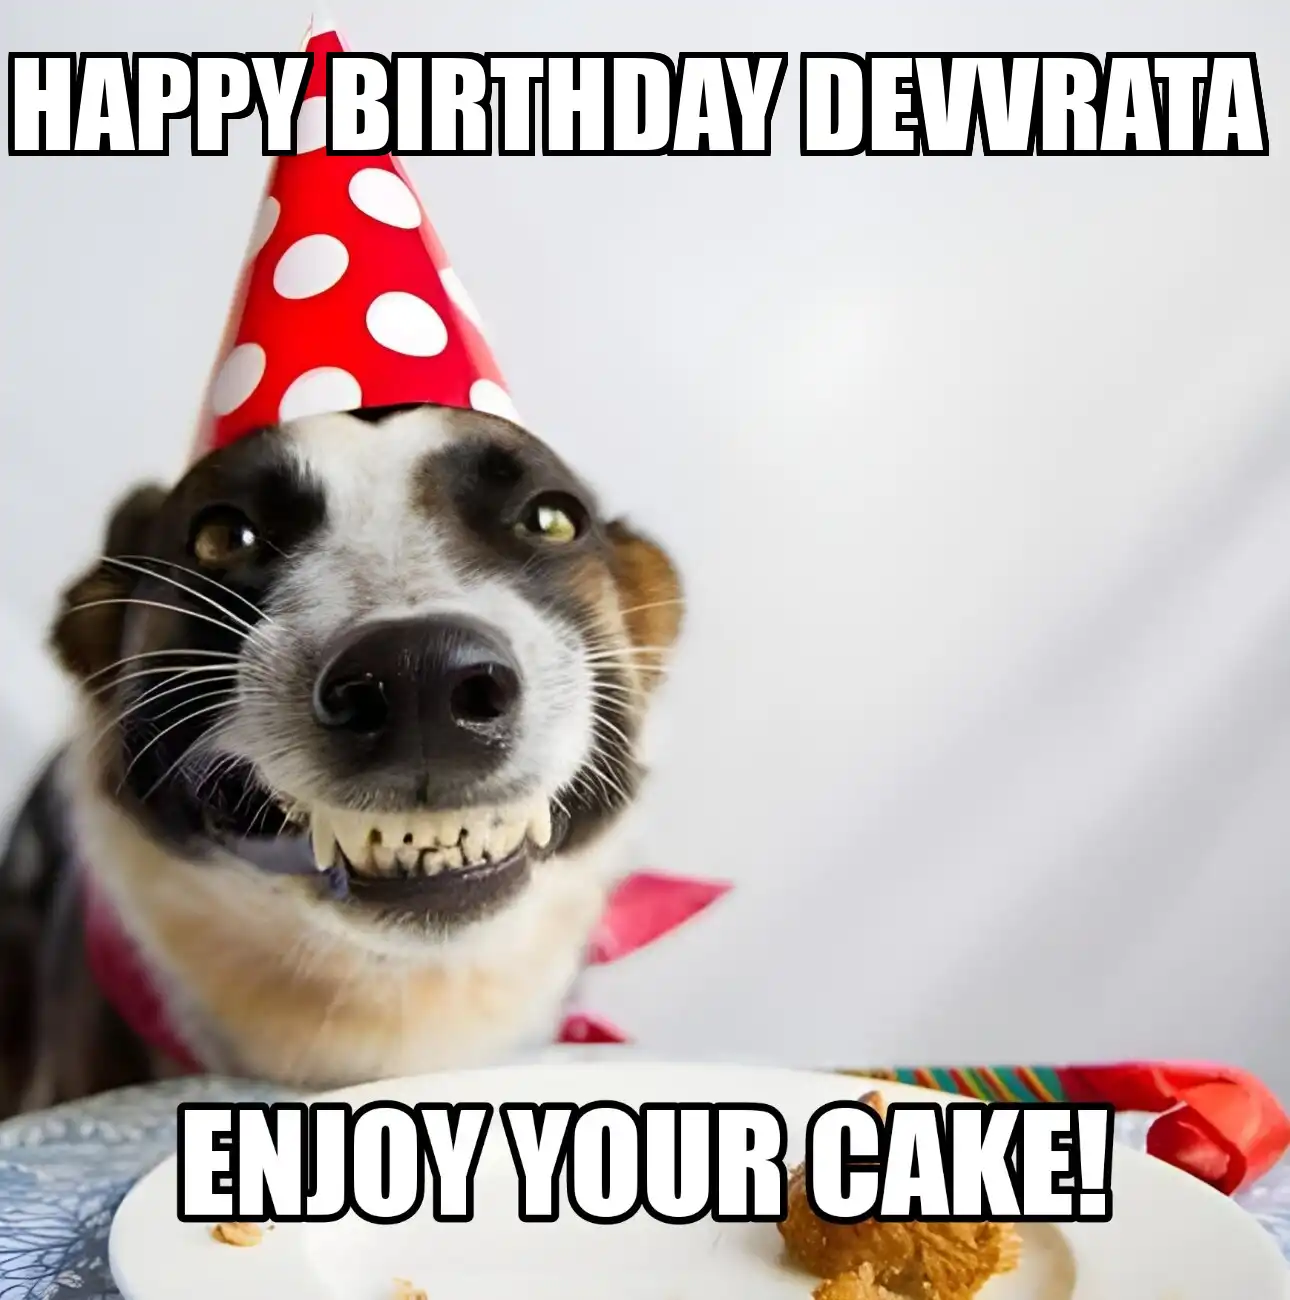 Happy Birthday Devvrata Enjoy Your Cake Dog Meme